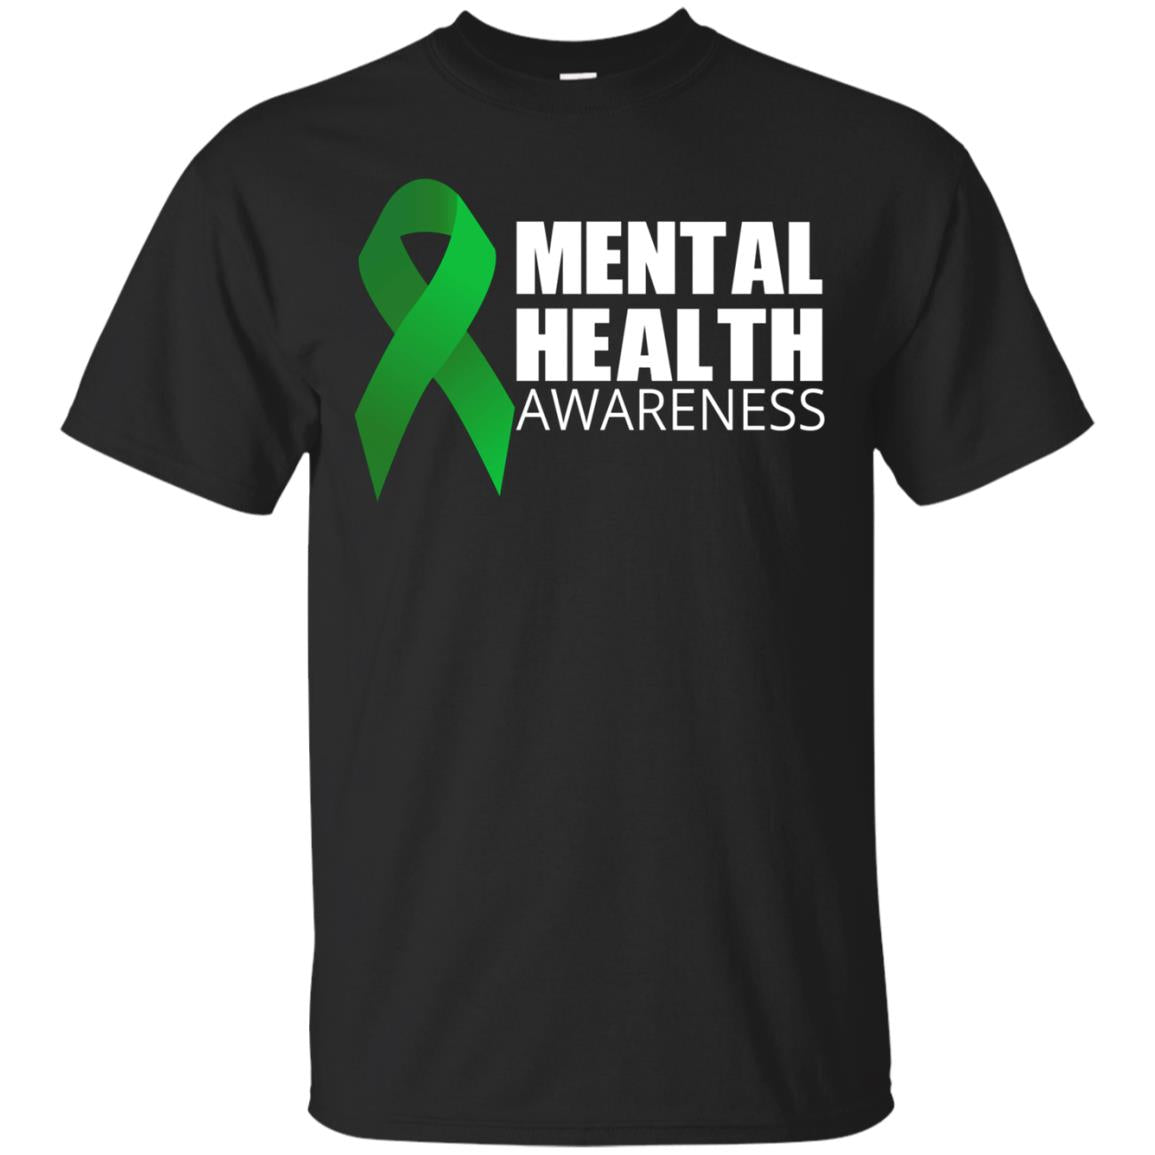 Tal Health Awareness T-shirt